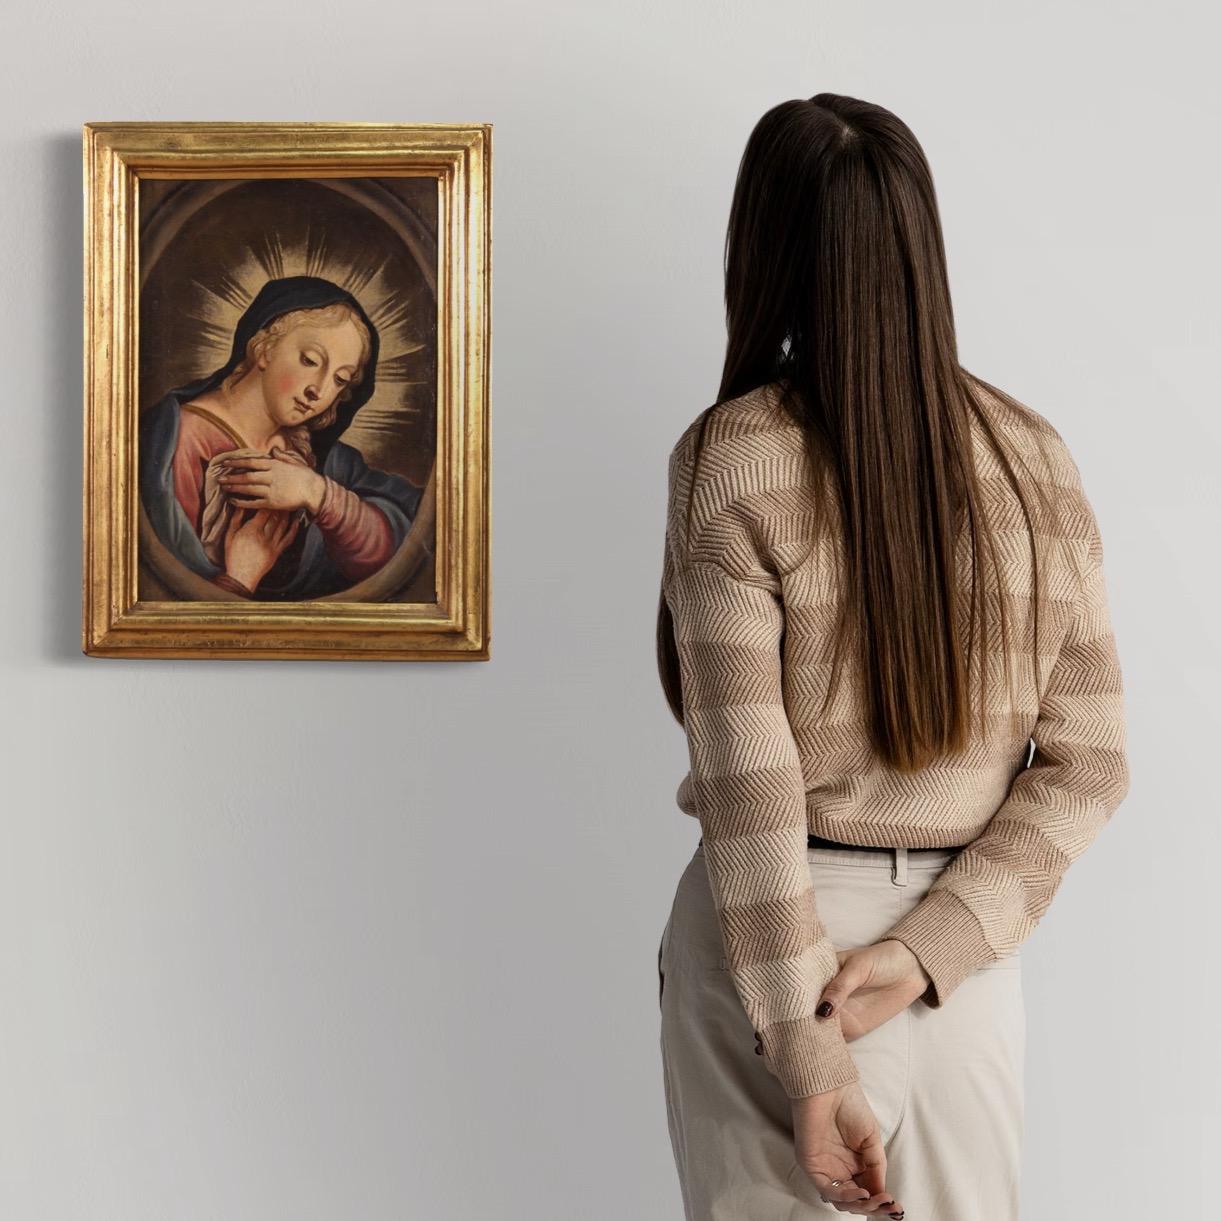 Antikes italienisches Gemälde aus der zweiten Hälfte des 18. Jahrhunderts. Öl auf Leinwand mit einem religiösen Thema, betende Madonna, von guter malerischer Qualität. Diese Ikonographie ist seit dem 17. Jahrhundert in privaten Andachtsräumen weit